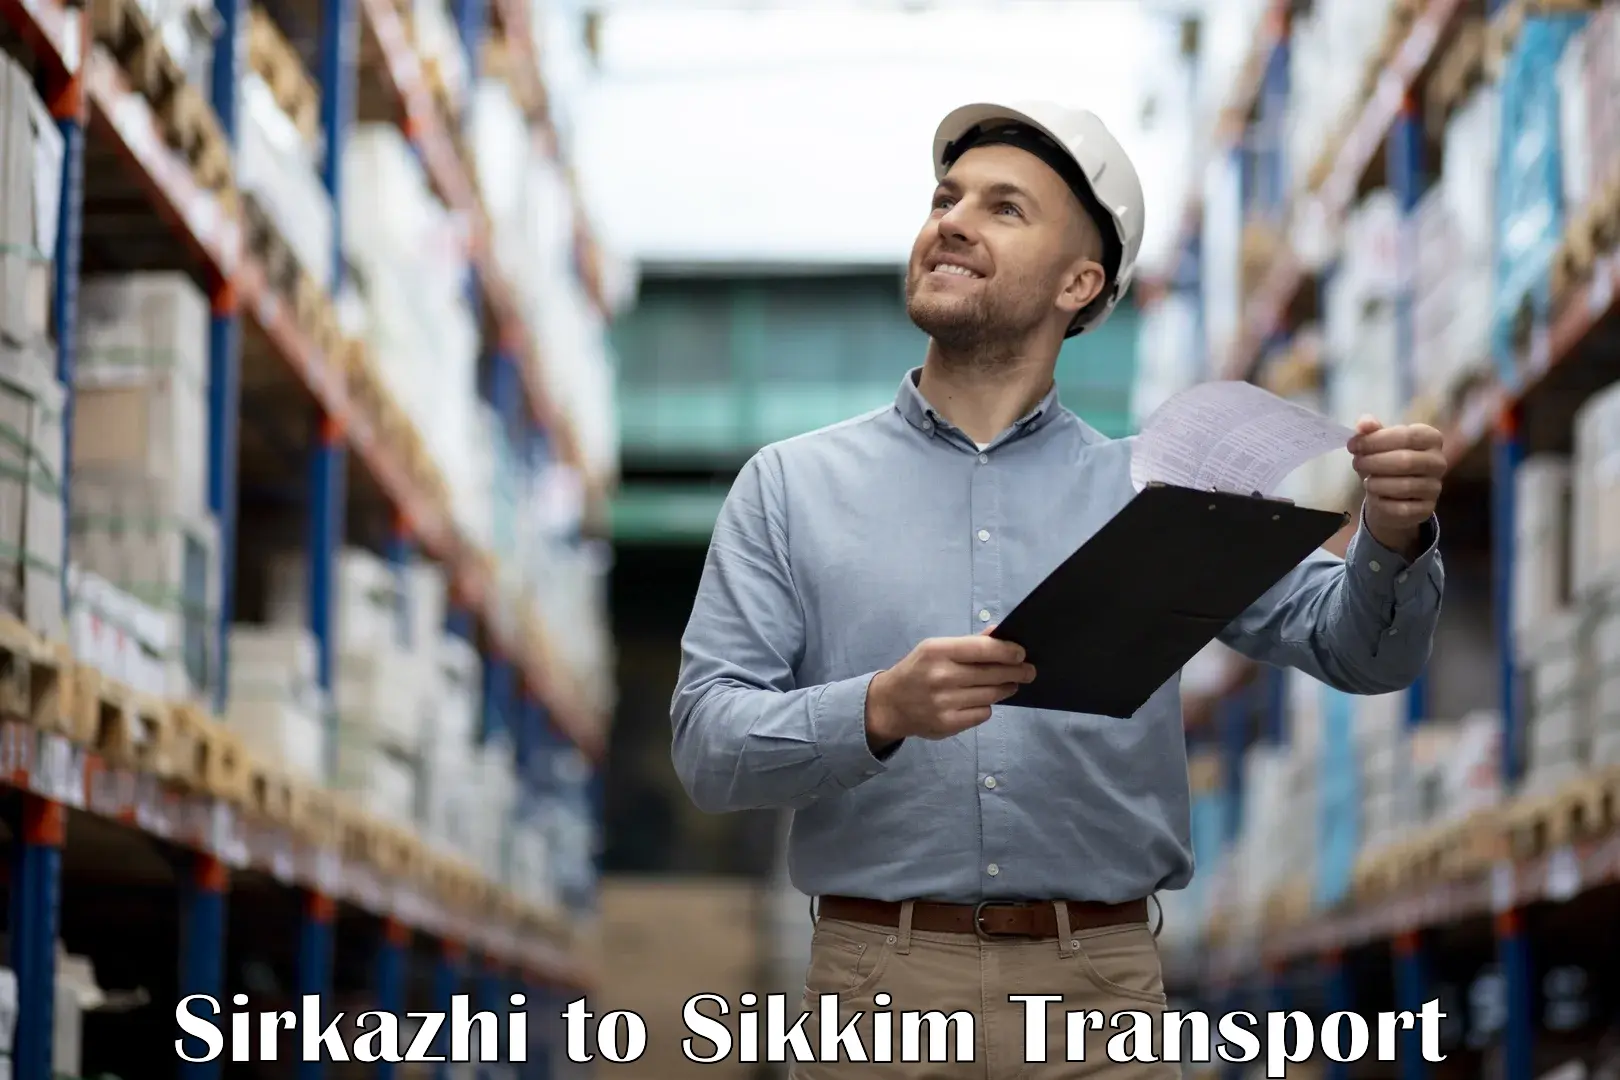 Shipping partner Sirkazhi to West Sikkim